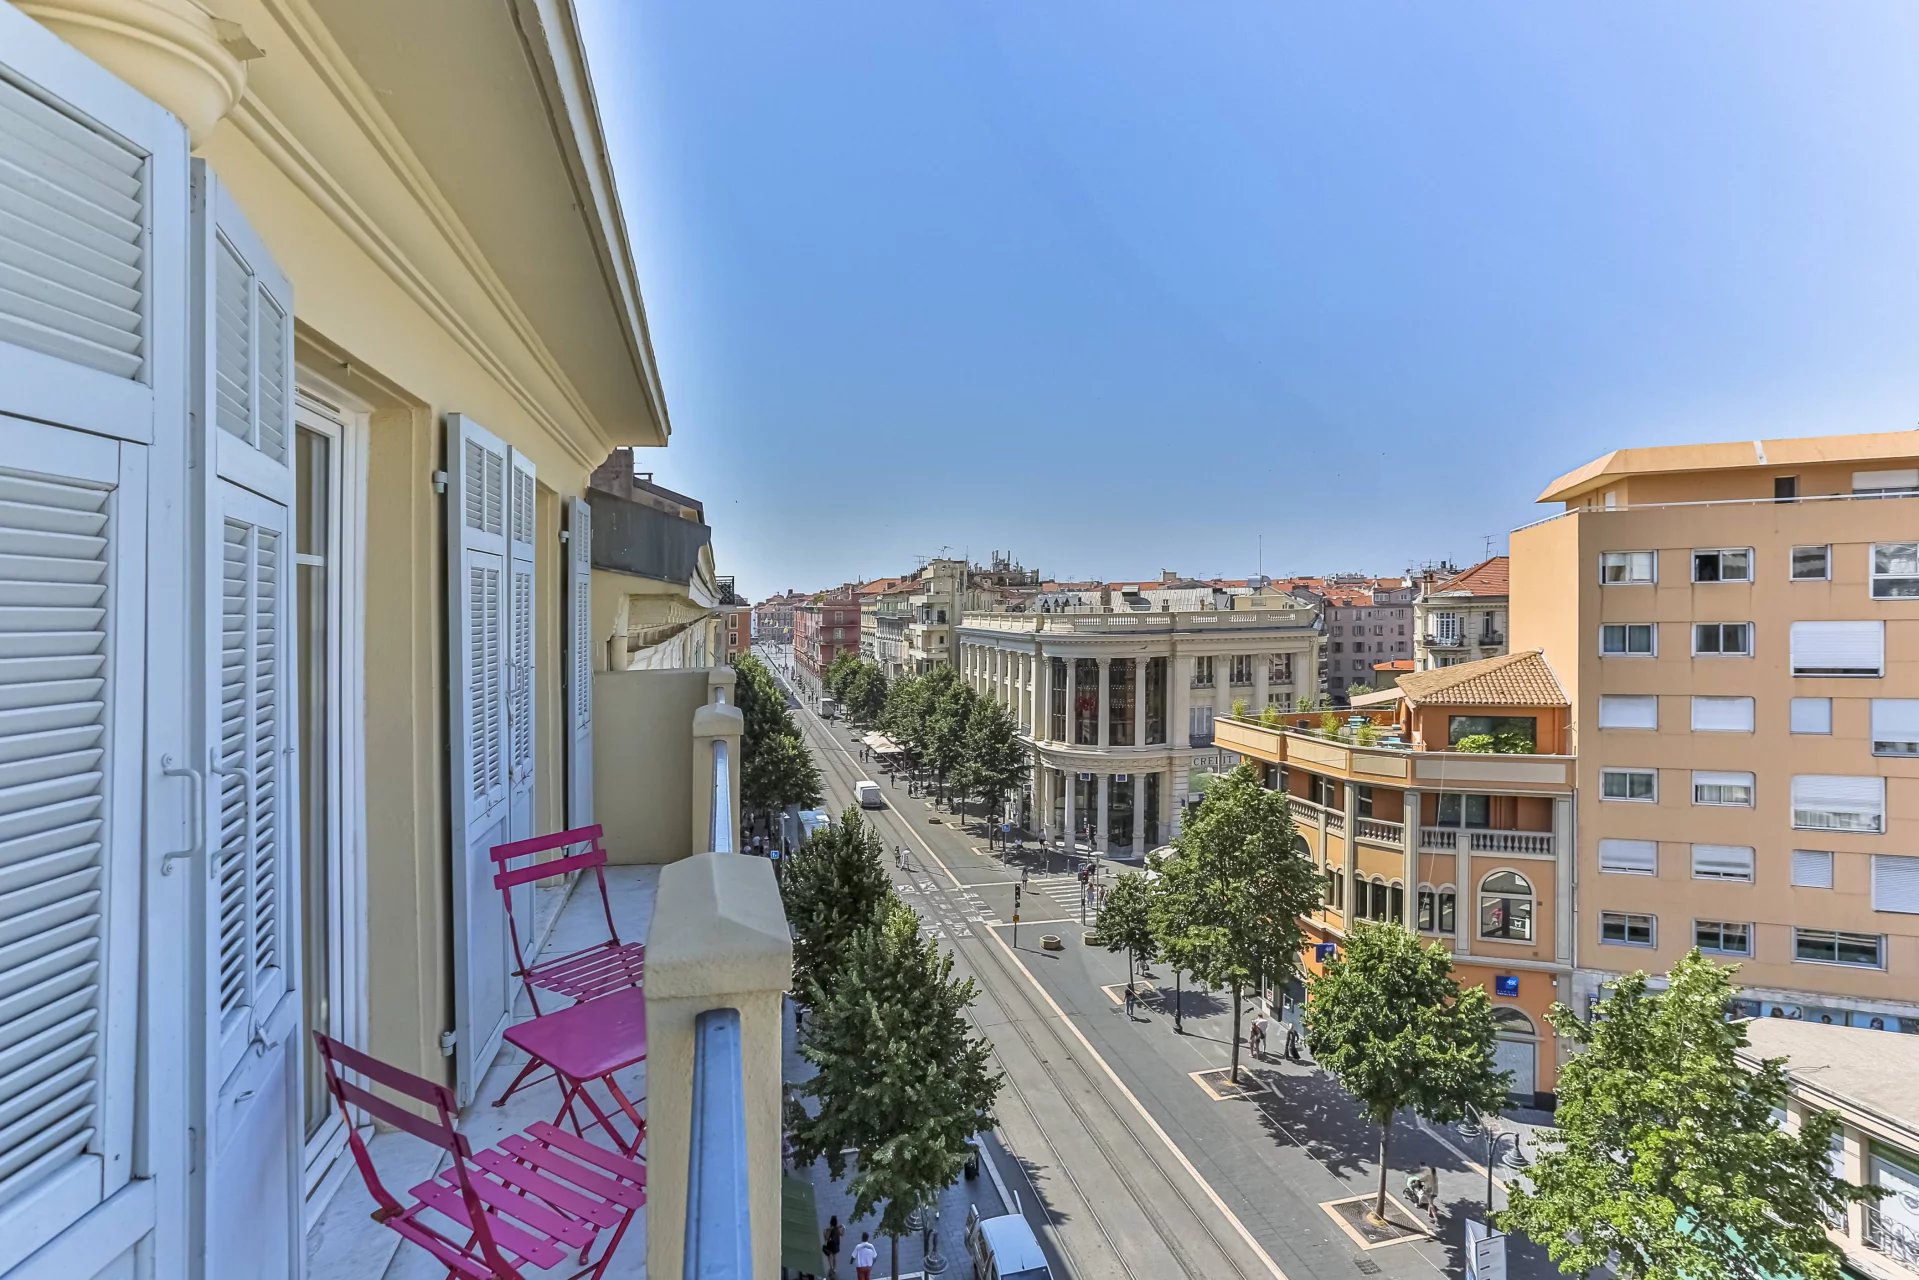 Duplex de 3 pièces avec balcon sur l'avenue Jean-Médecin - 5 minutes à pied de la place Masséna - Climatisation - Annulation gratuite